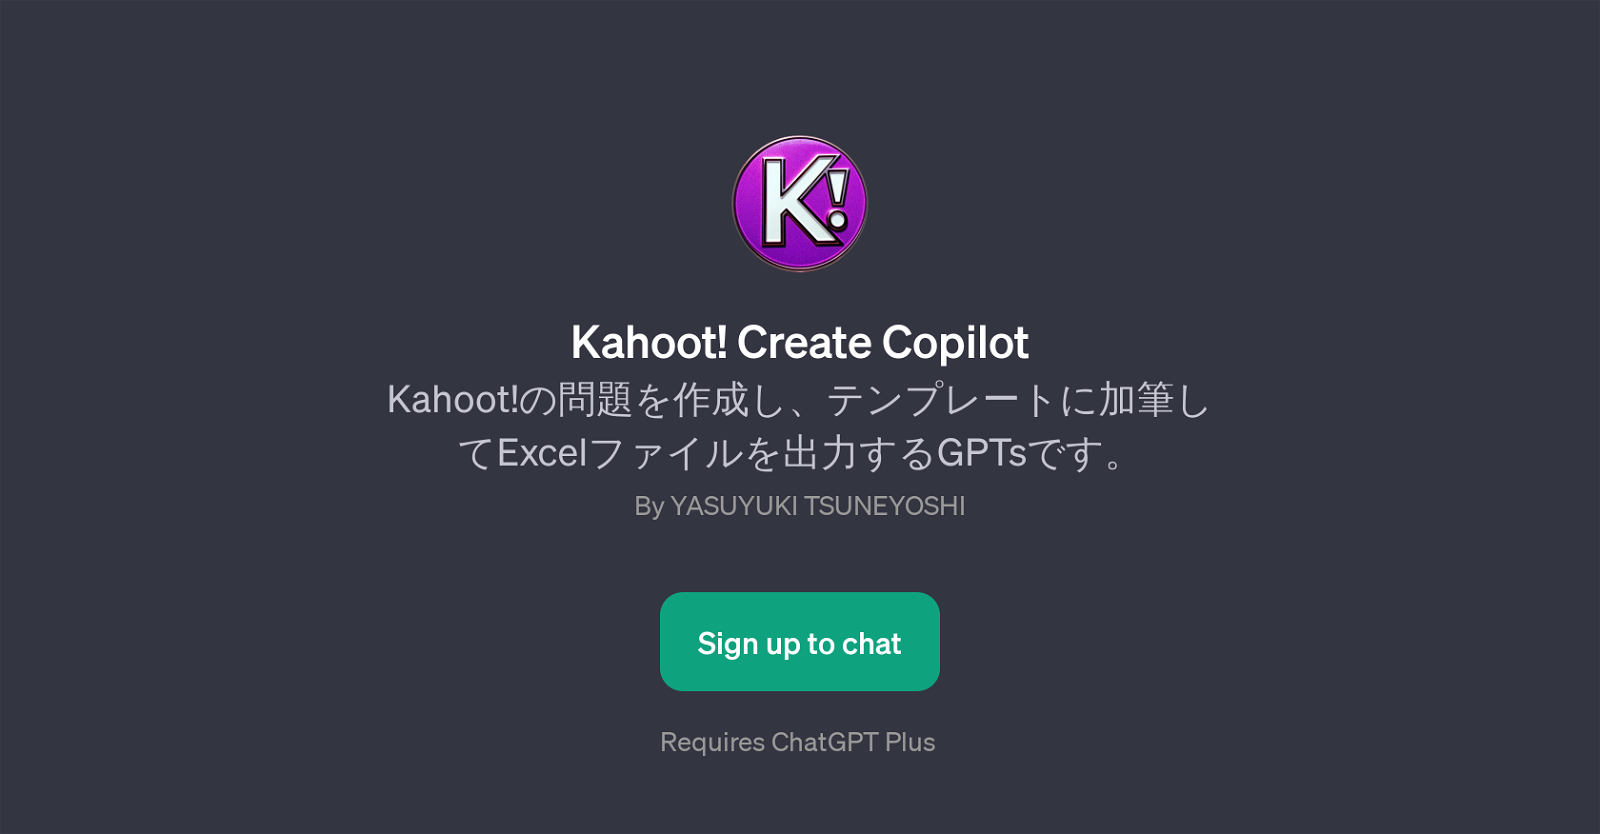 Kahoot! Create Copilot website